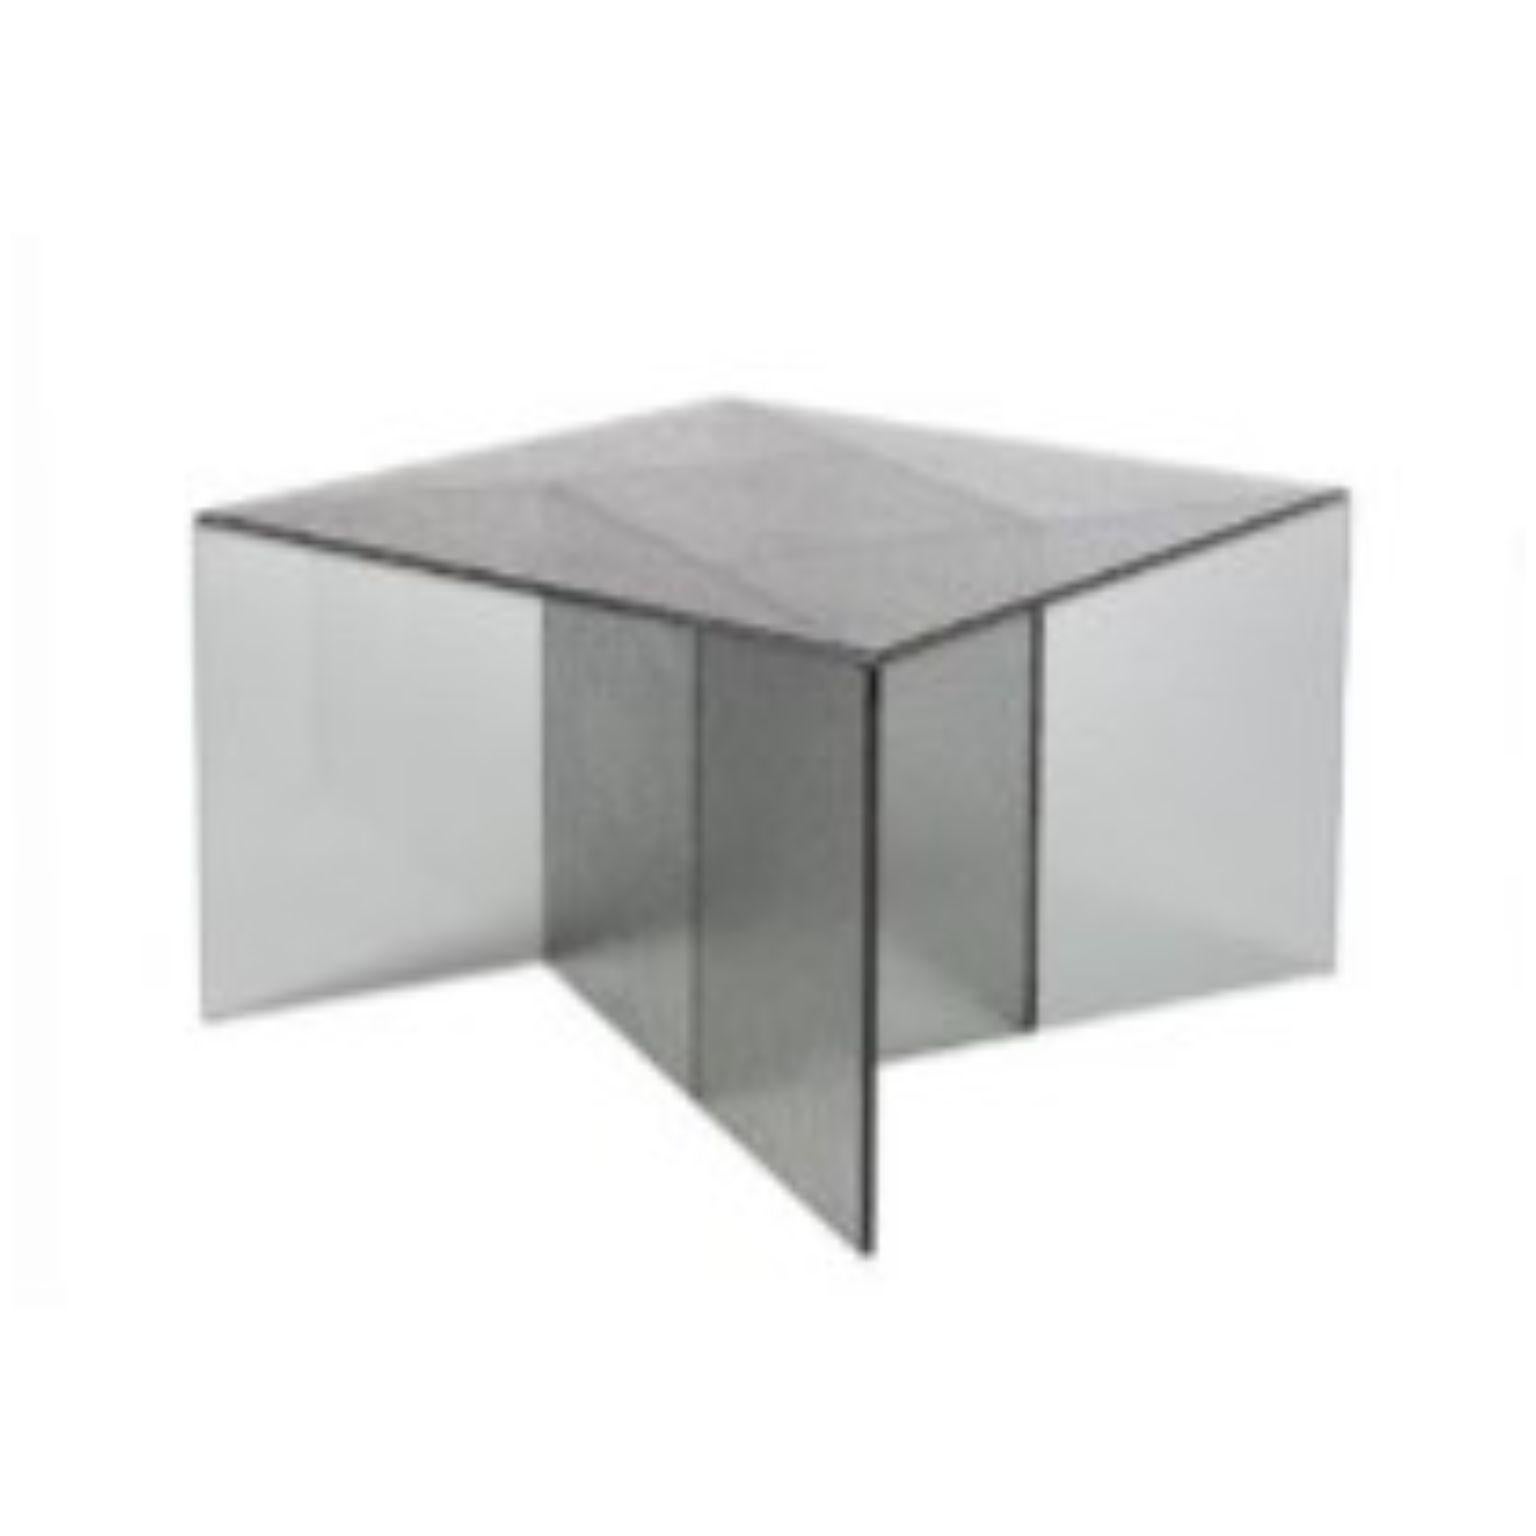 Table basse Aspa gris moyen par Pulpo
Dimensions : D60 x L60 x H40 cm
Matériaux : verre

Disponible également en différentes couleurs. 

La variété est un plaisir. Aspa, le concept de table d'appoint du studio de design espagnol MUT, est une simple